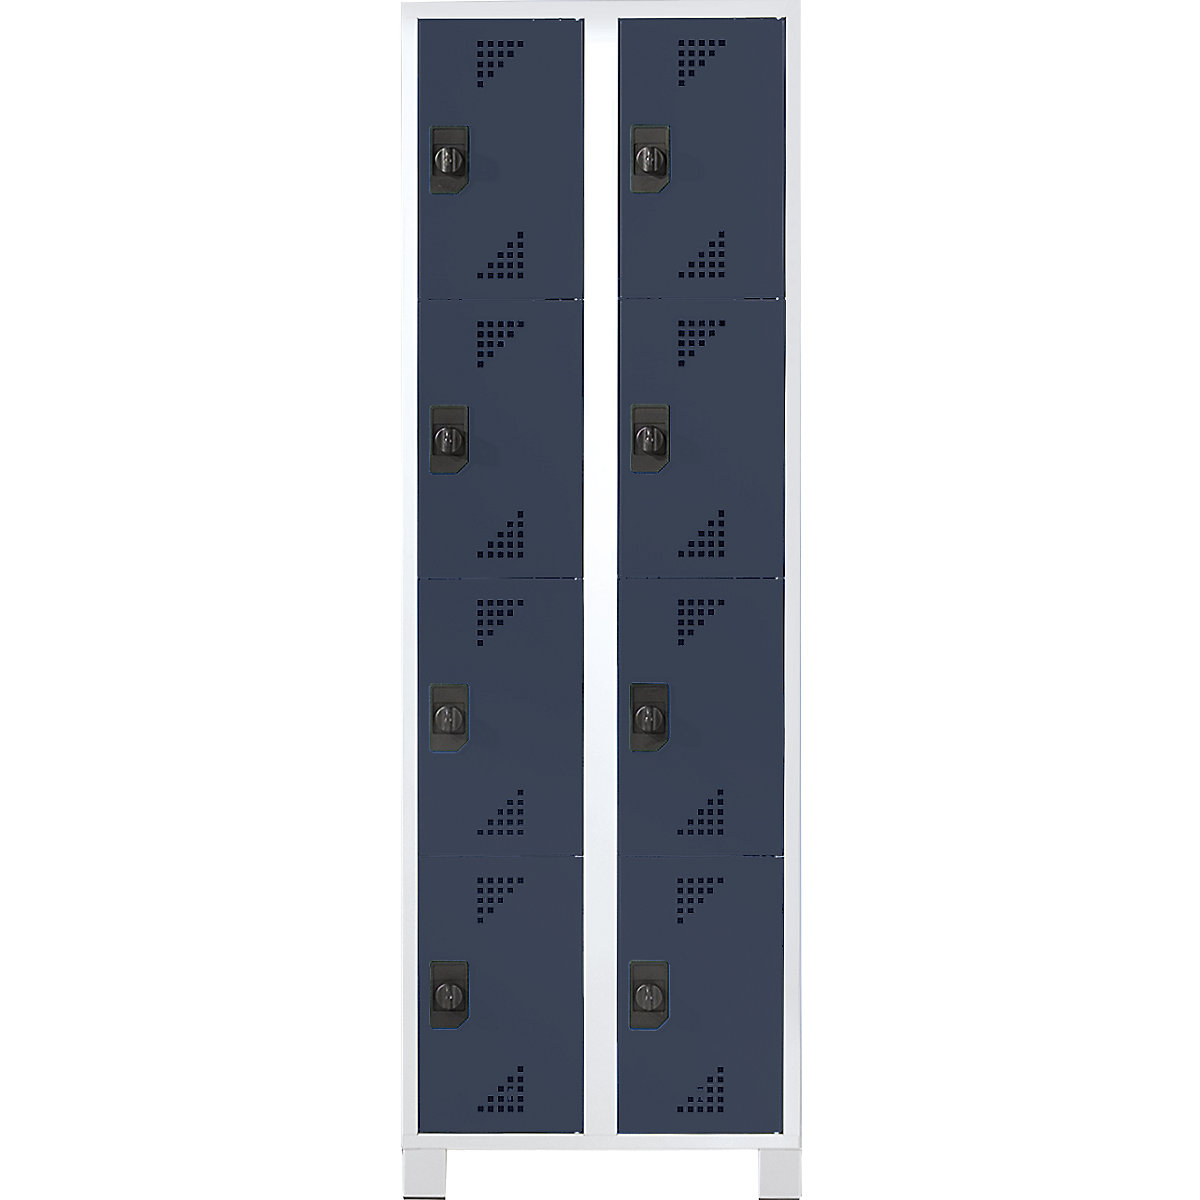 EUROKRAFTpro – Vestiaire multicases, hauteur cases 418 mm, h x l x p 1800 x 800 x 500 mm, 8 compartiments, corps gris clair, portes anthracite